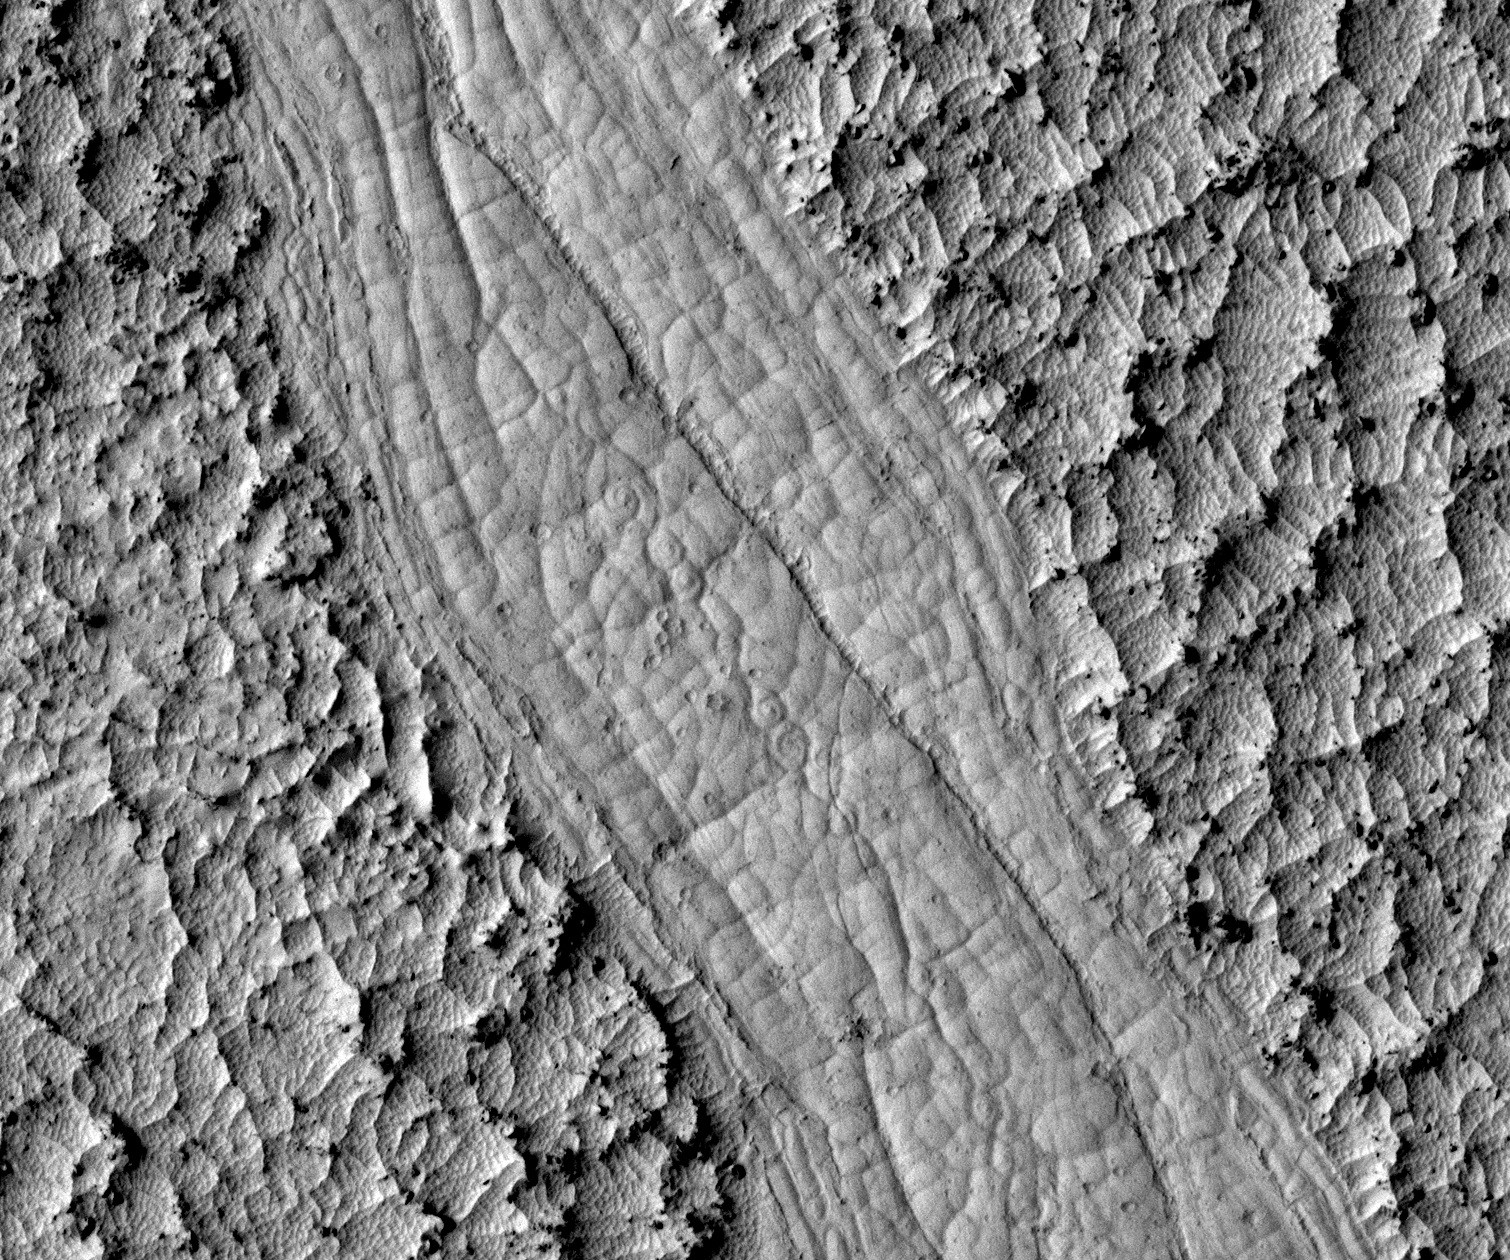 Les spirales découvertes au fond des chenaux d'Athabasca Valles confirment l'origine volcanique de ces écoulements martiens. © Nasa